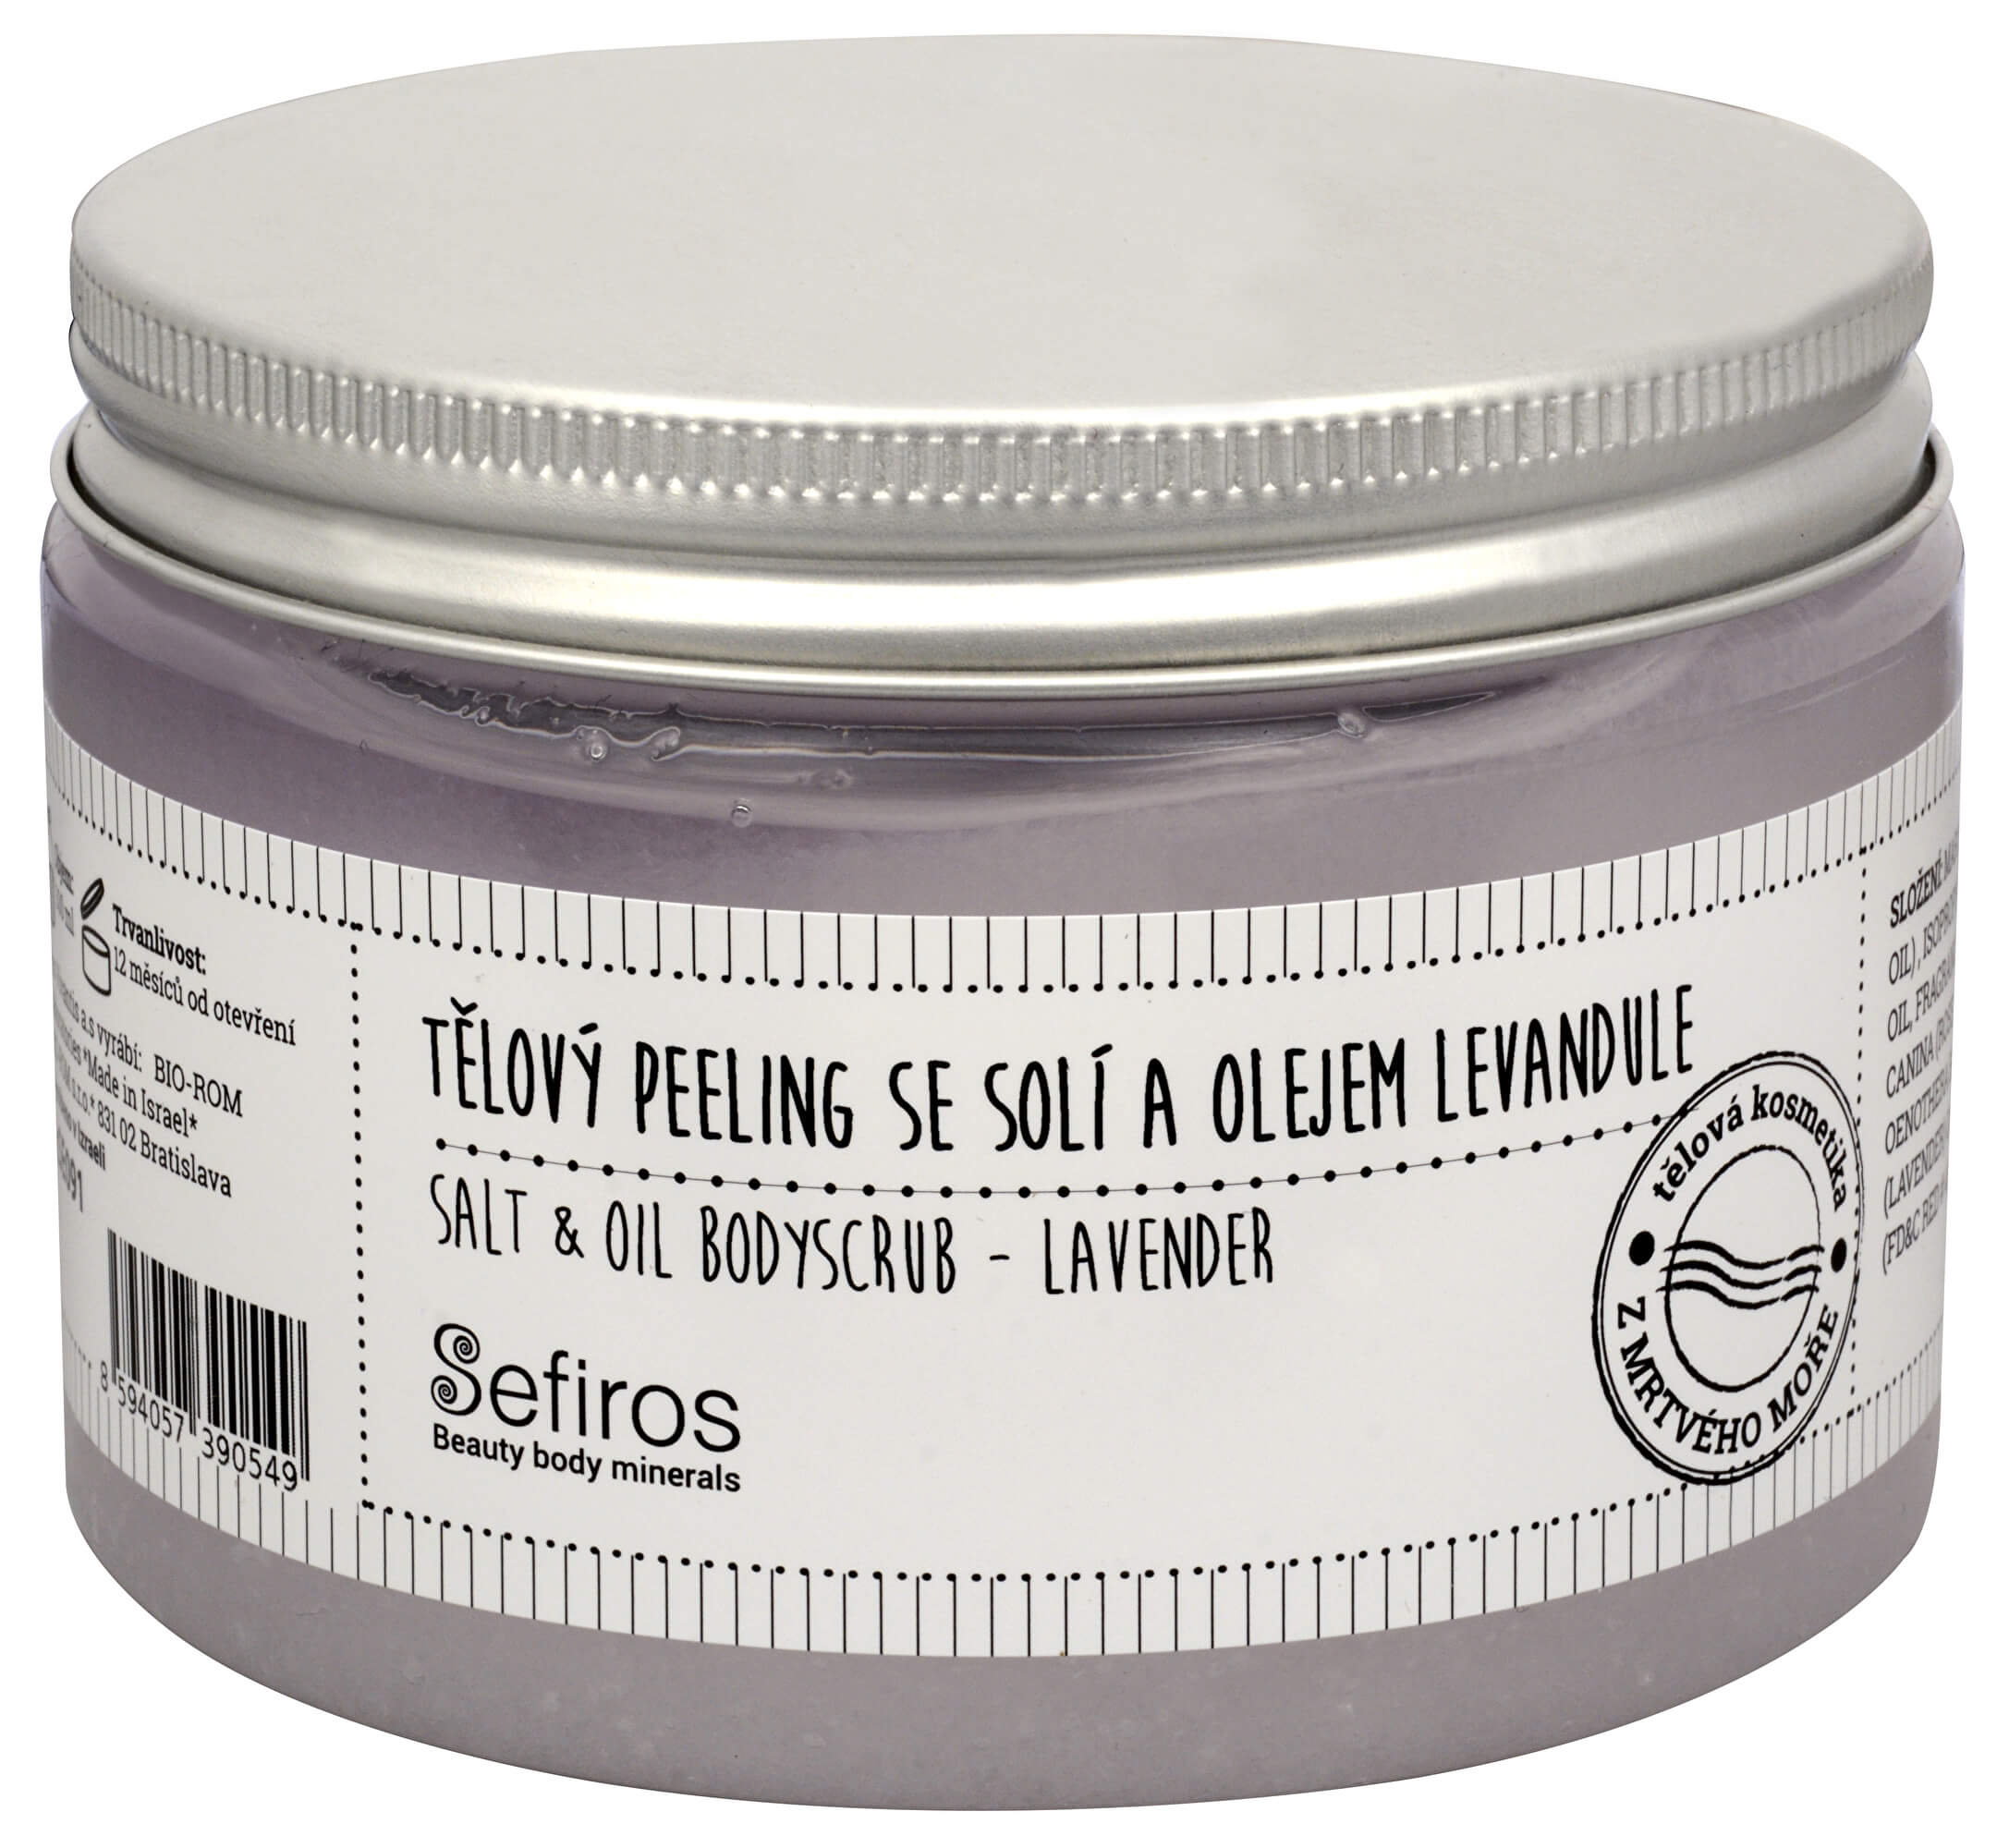 Sefiross Tělový peeling se solí a olejem Levandule (Salt & Oil Bodyscrub) 300 ml